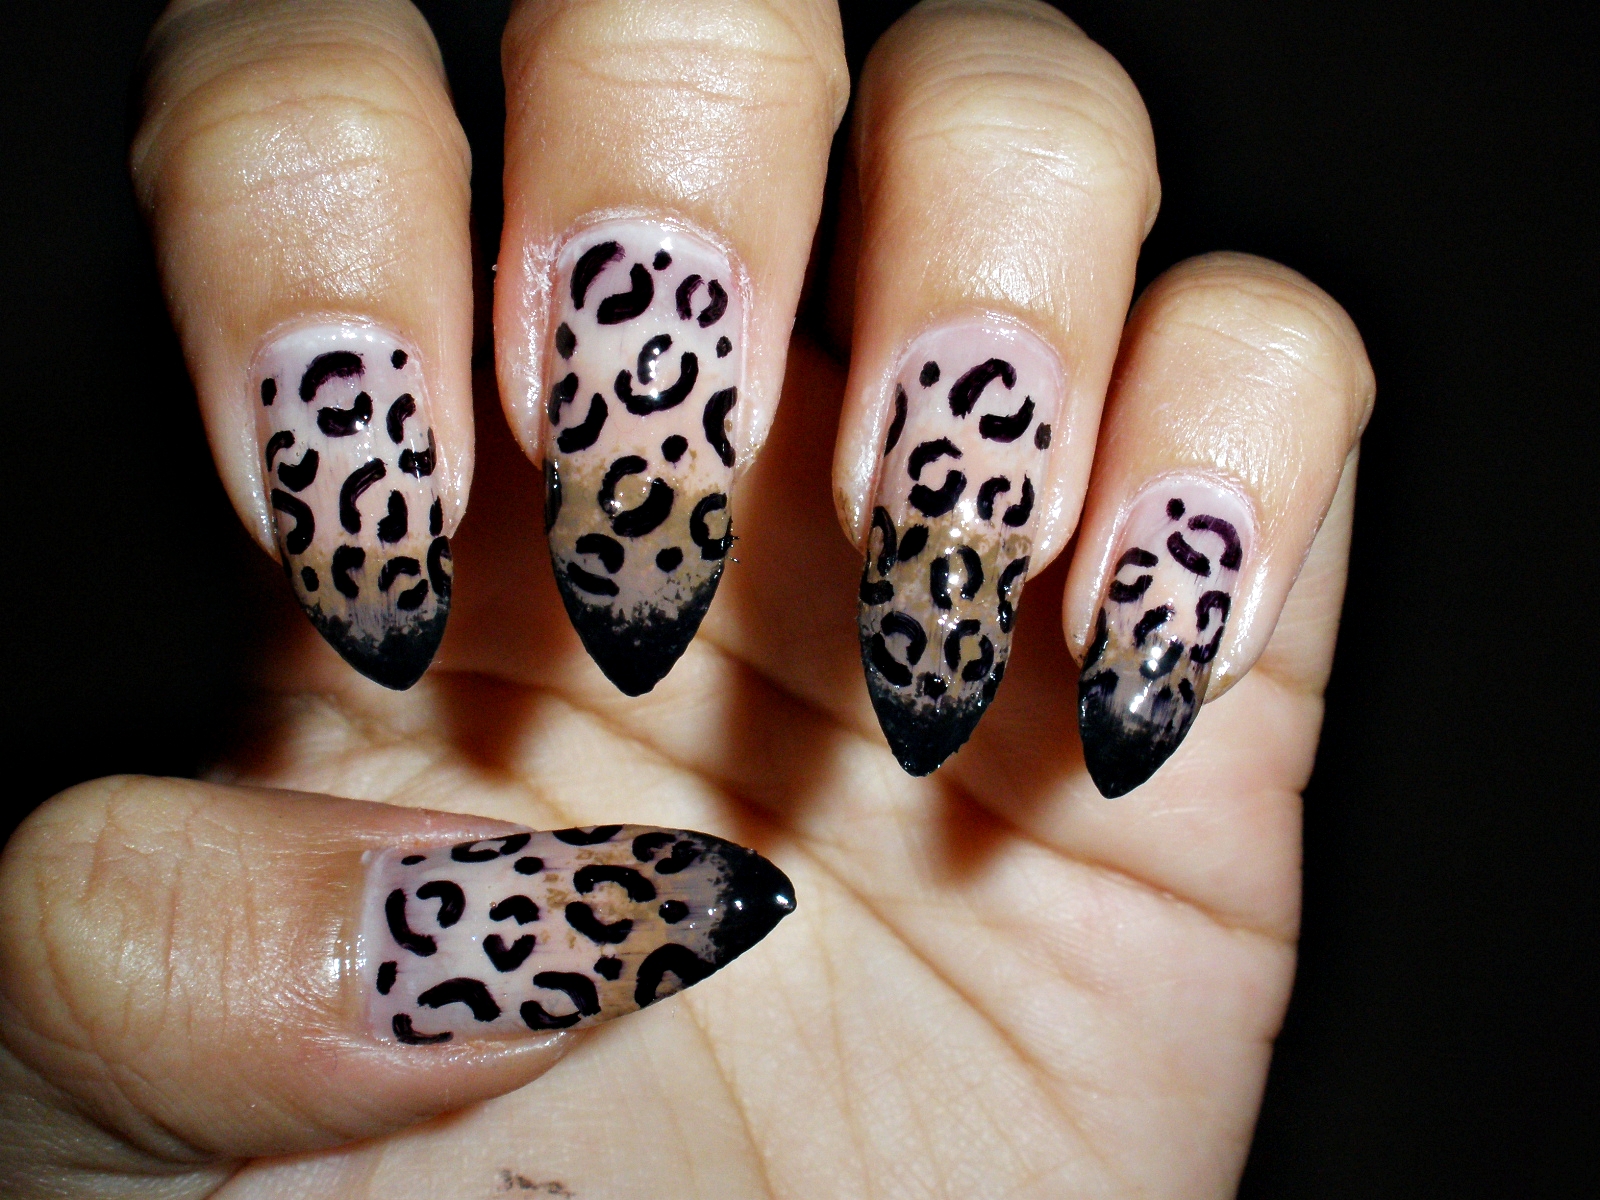 13 Cheetah Nail Art Designs Images Cheetah Print Acrylic Nail Designs Leopard Print Nail Art And Leopard Print Nail Art Newdesignfile Com,Manish Malhotra Saree Blouse Back Designs